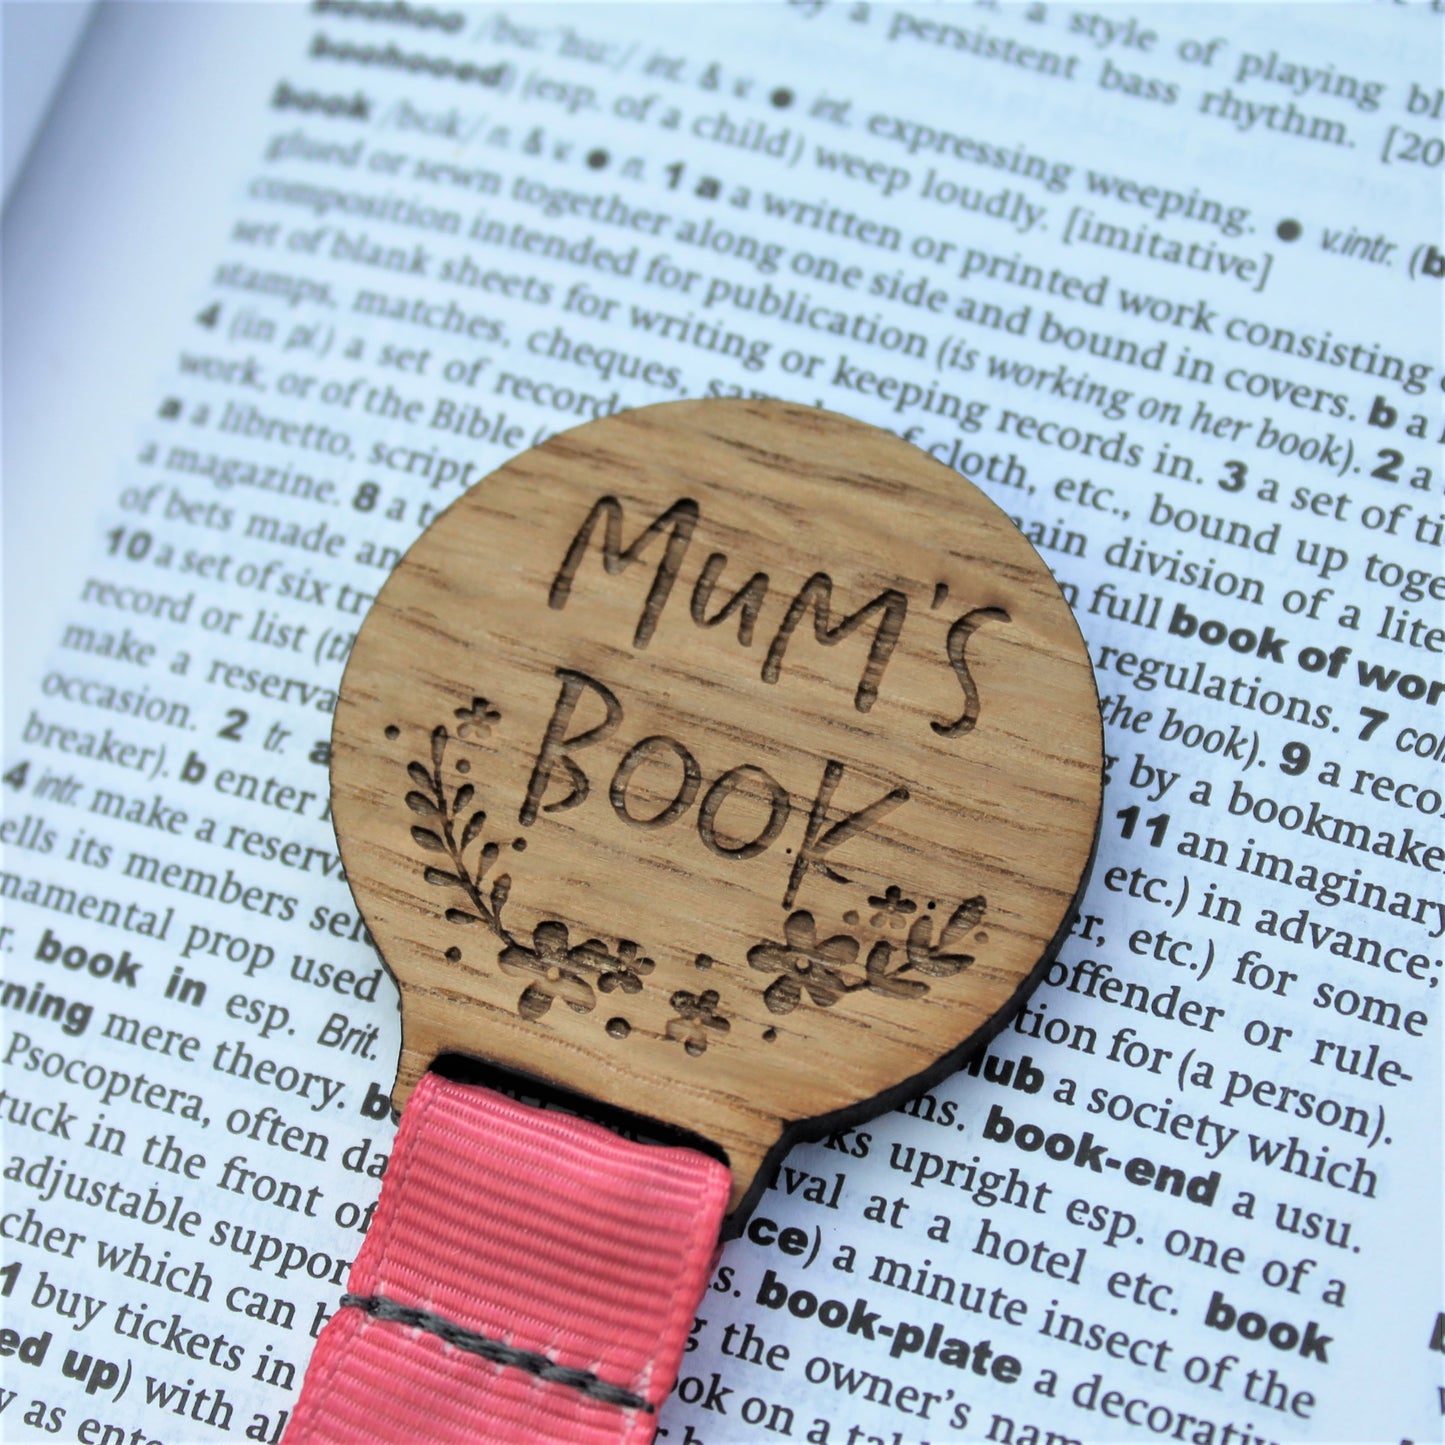 Mum's Book Bookmark